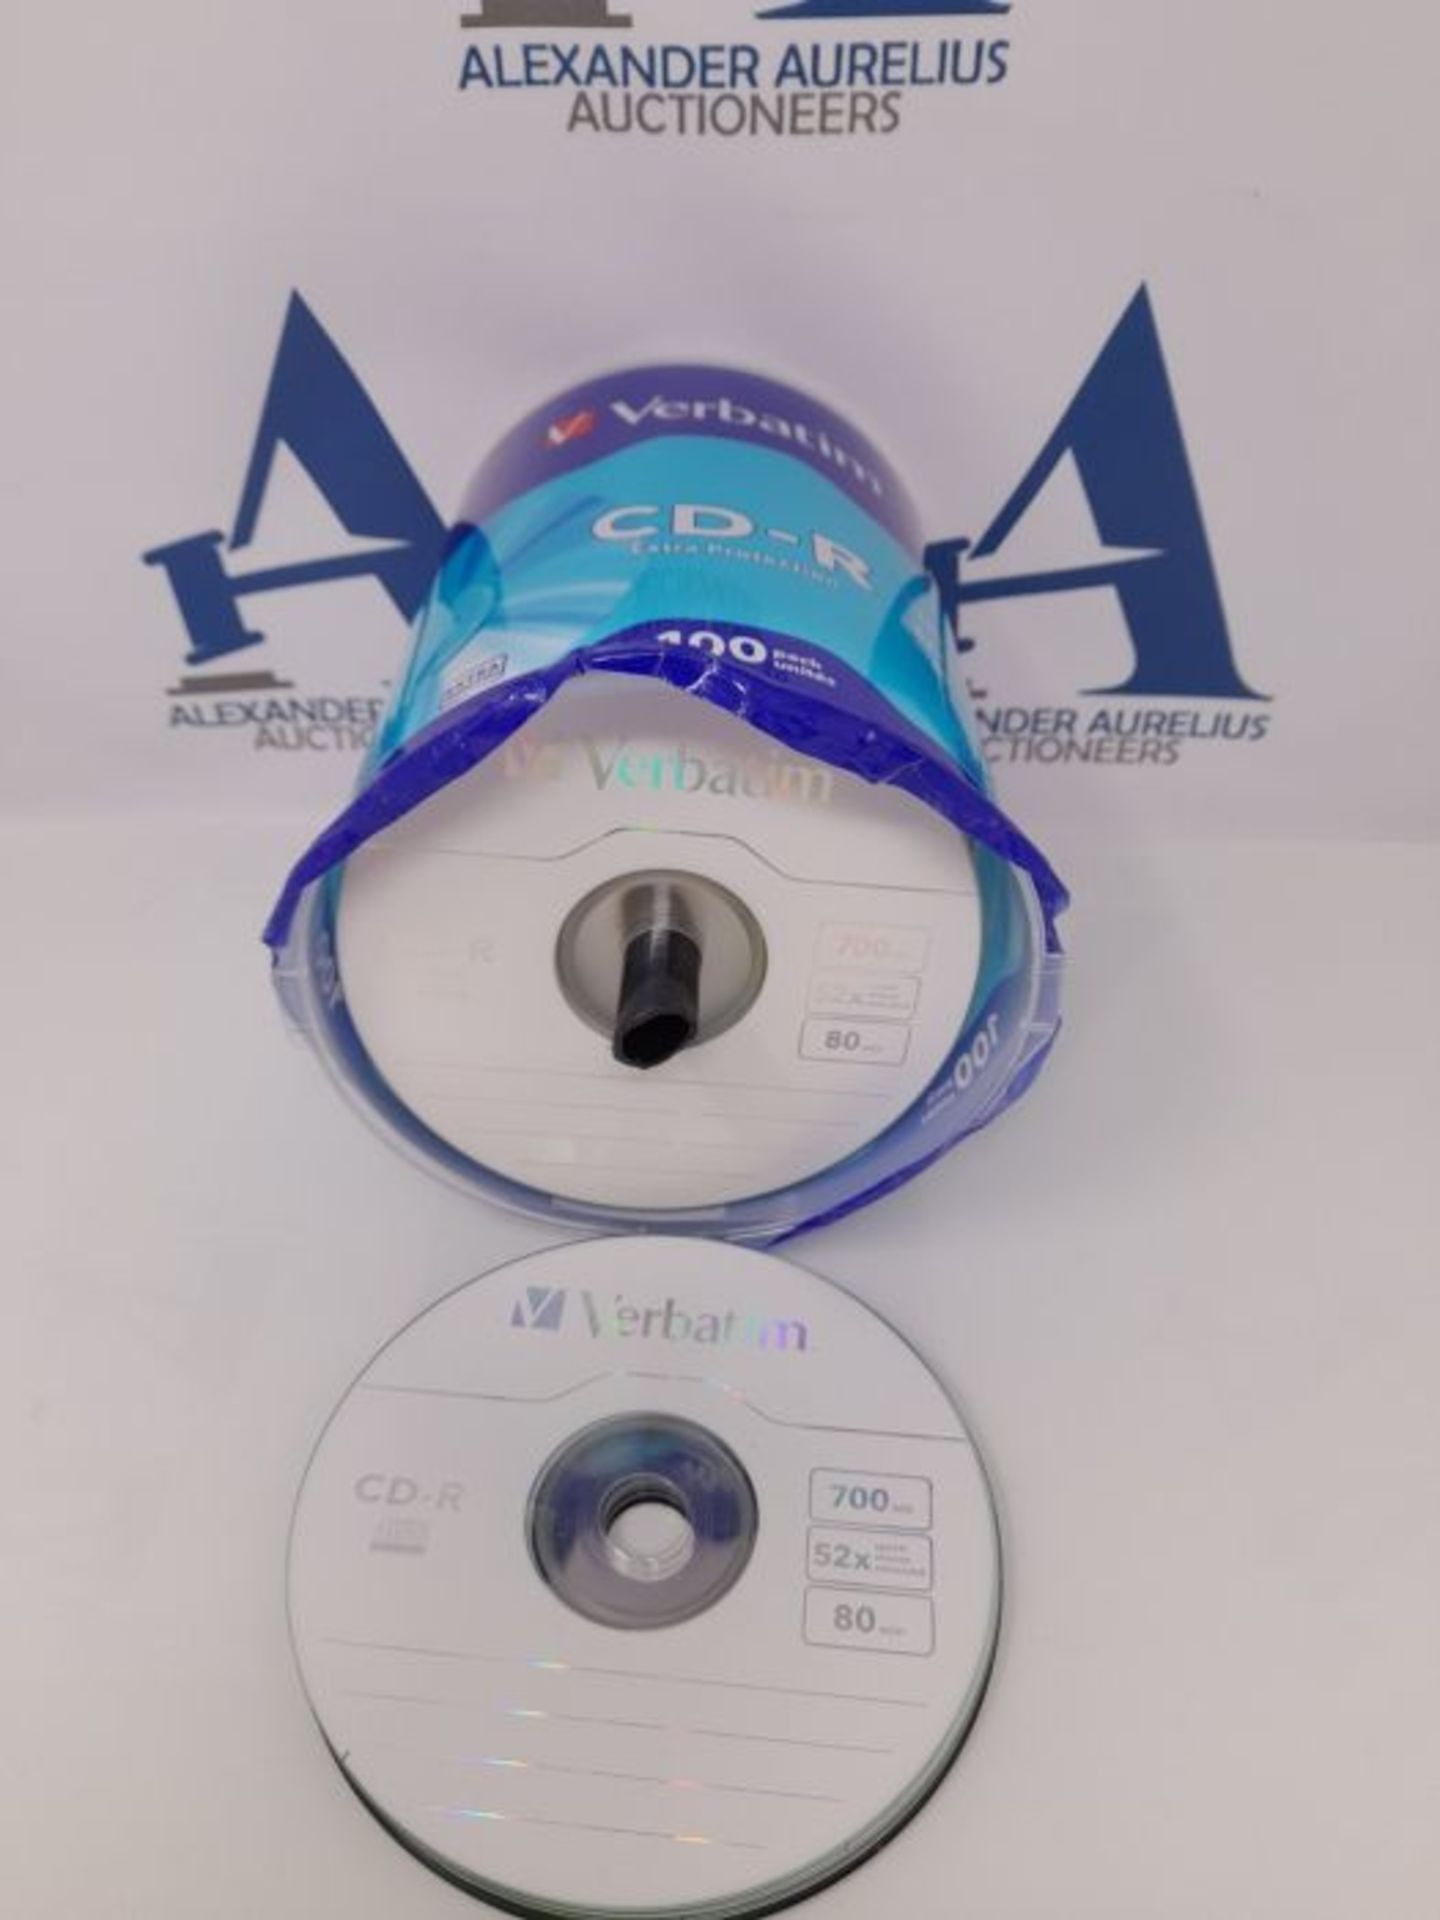 Verbatim CD-R 52x 700MB, confezione da 100 - Image 2 of 3